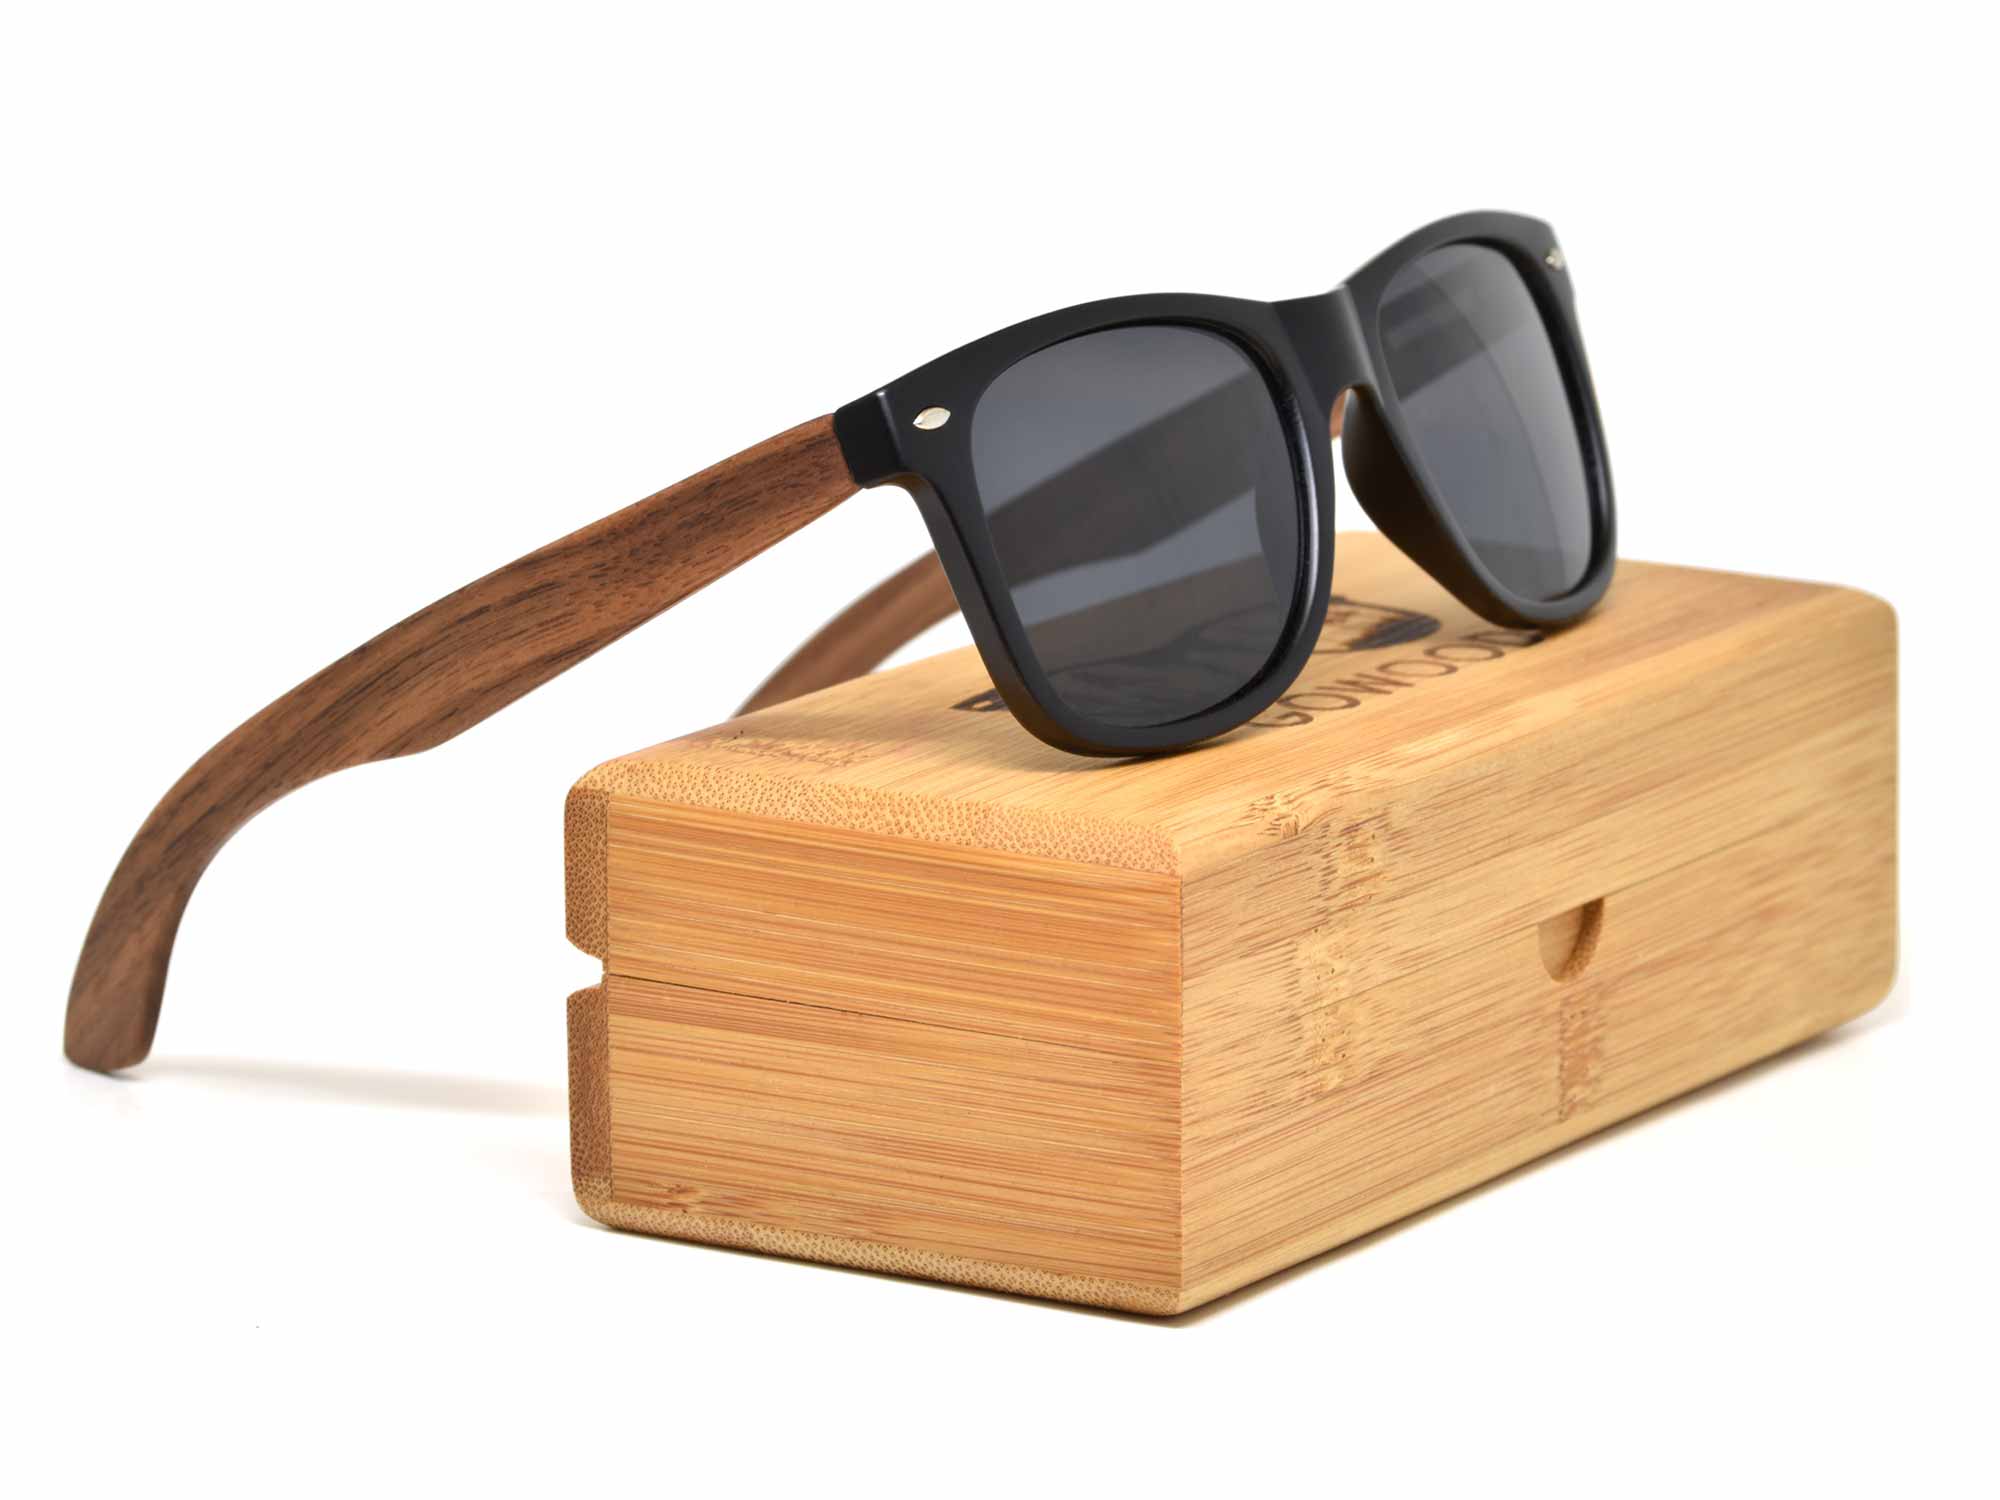 Walnut wood sunglasses with black polarized lenses